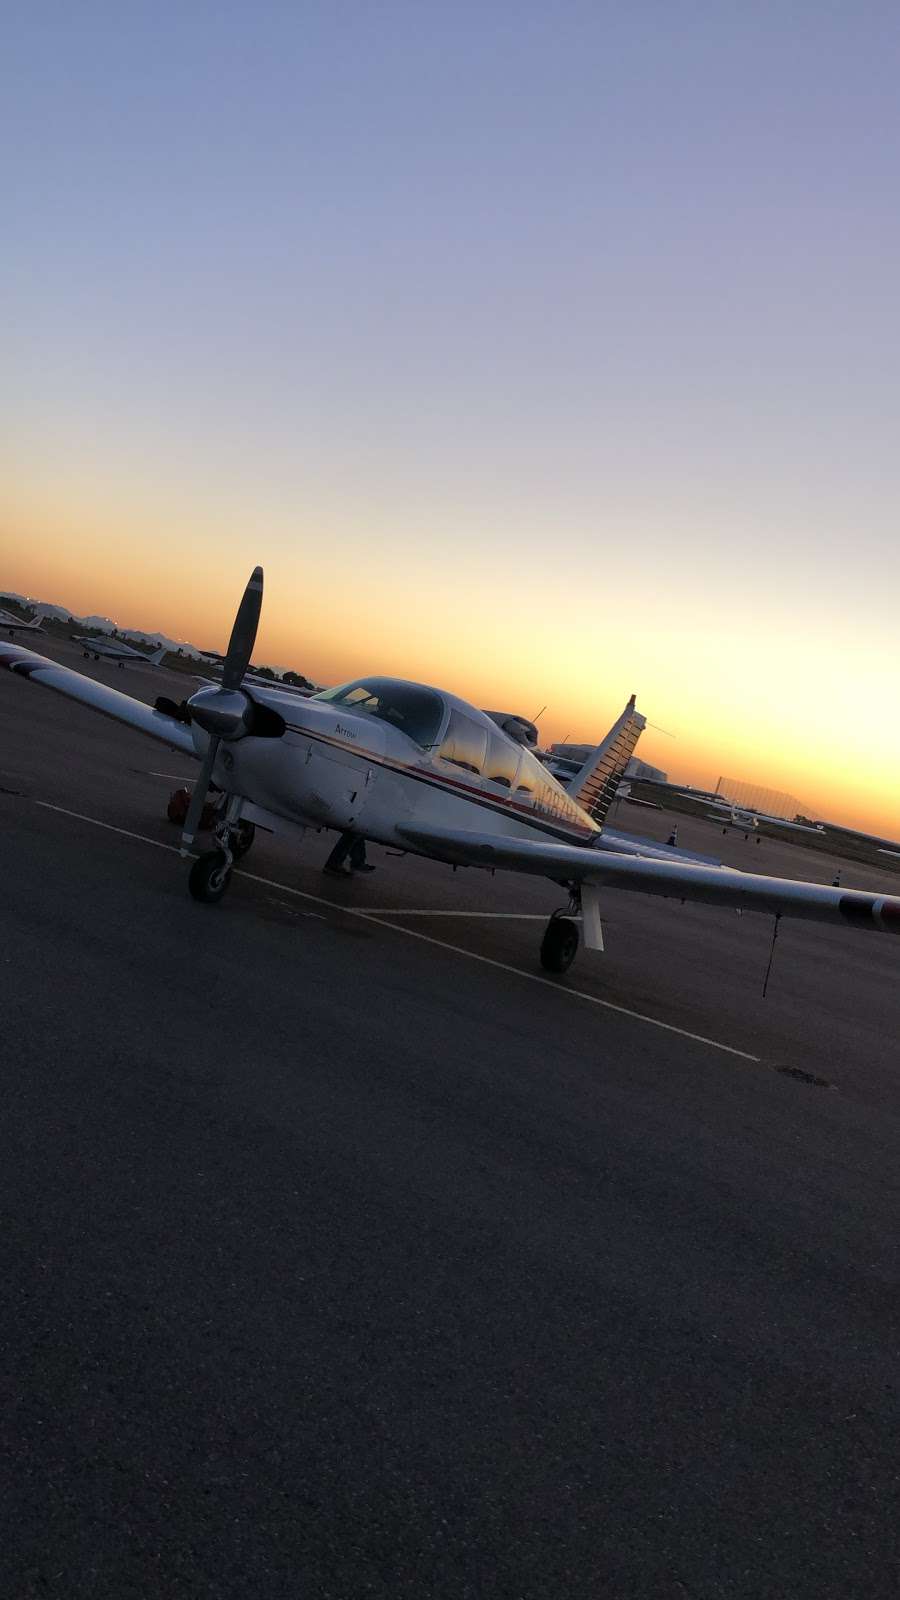 Aerosim Aviation | 6801 N Glen Harbor Blvd #205, Glendale, AZ 85307 | Phone: (623) 341-4311